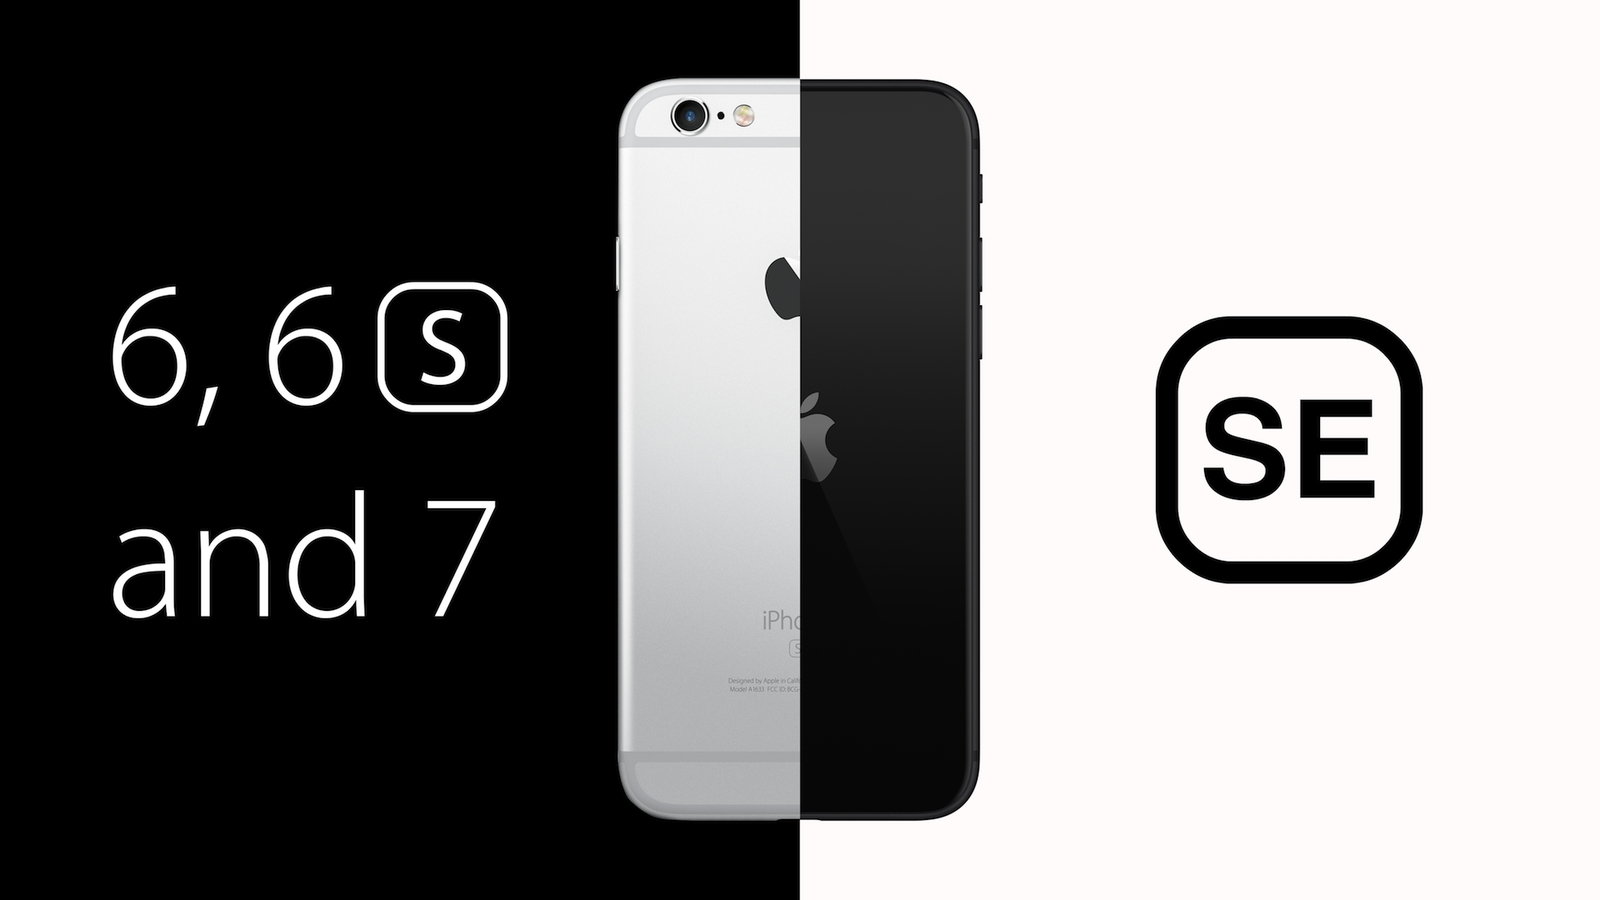 Kostuums Duizeligheid Hervat iPhone 6, 6s, & 7 vs. iPhone SE: Should You Upgrade? - MacRumors